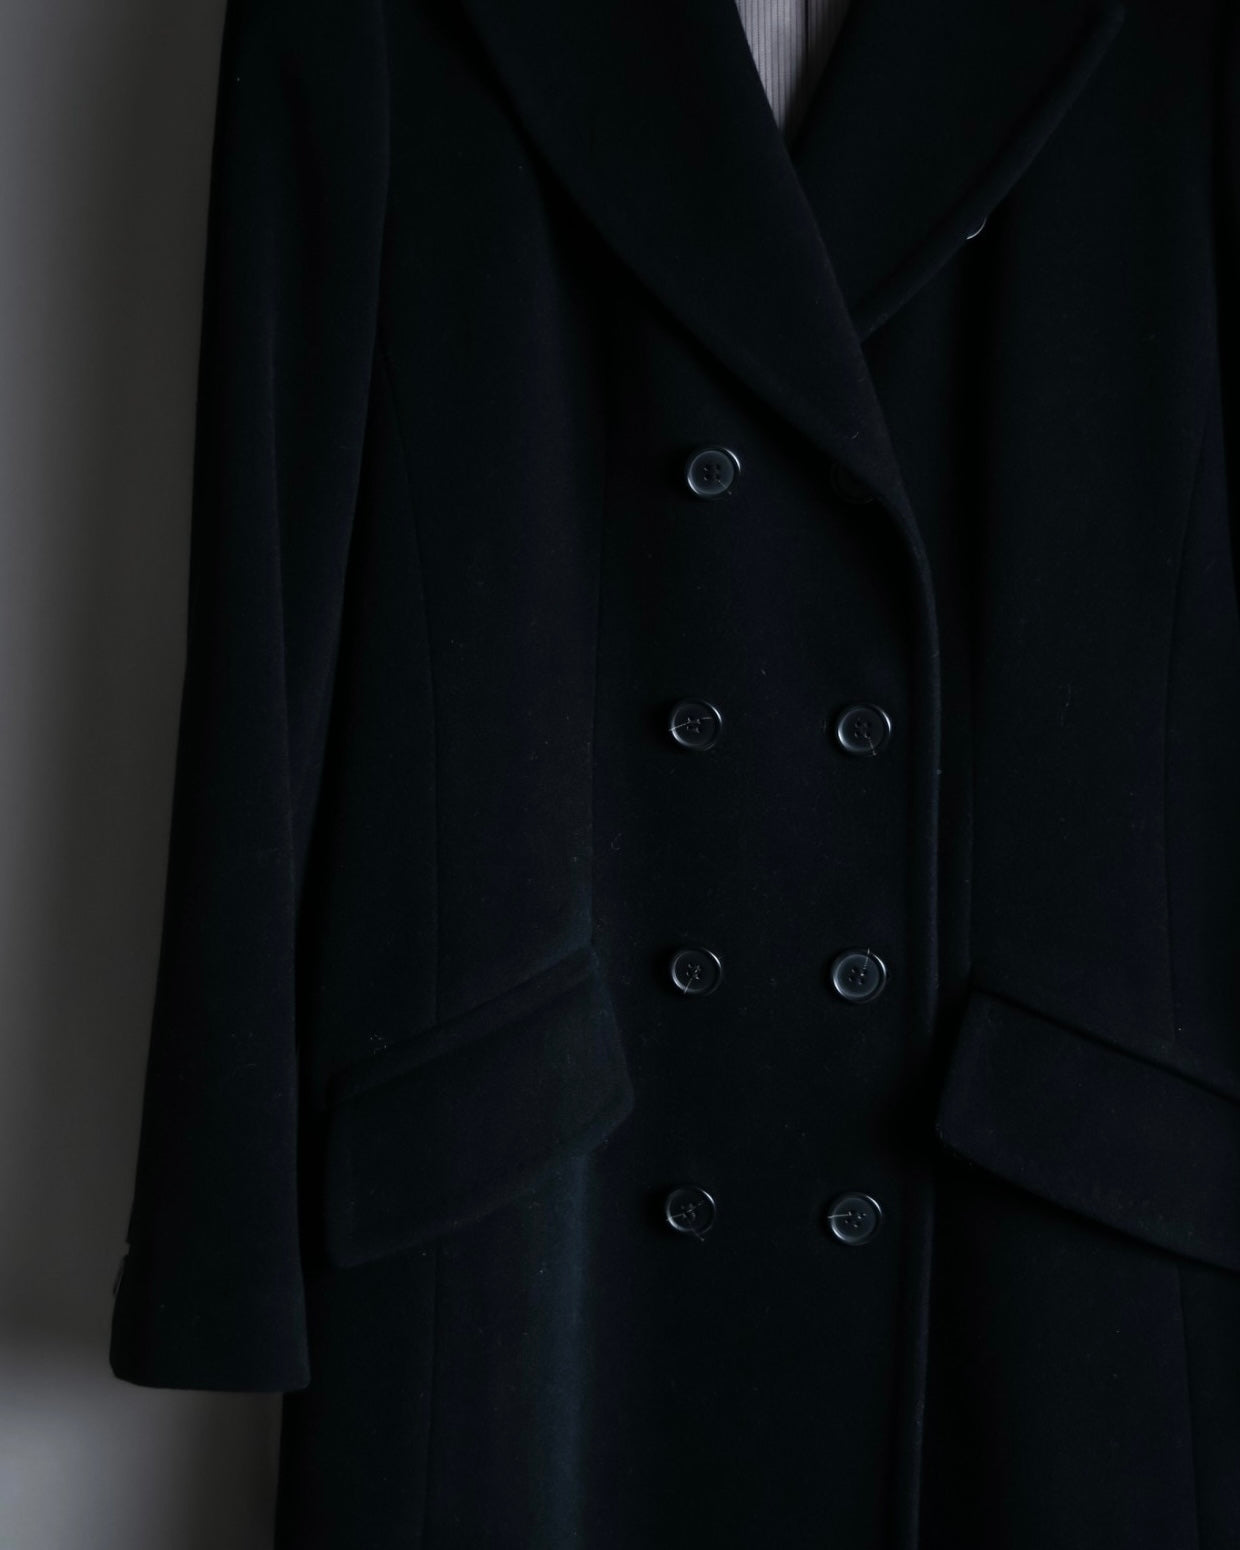 Vintage cashmere blend super long coat